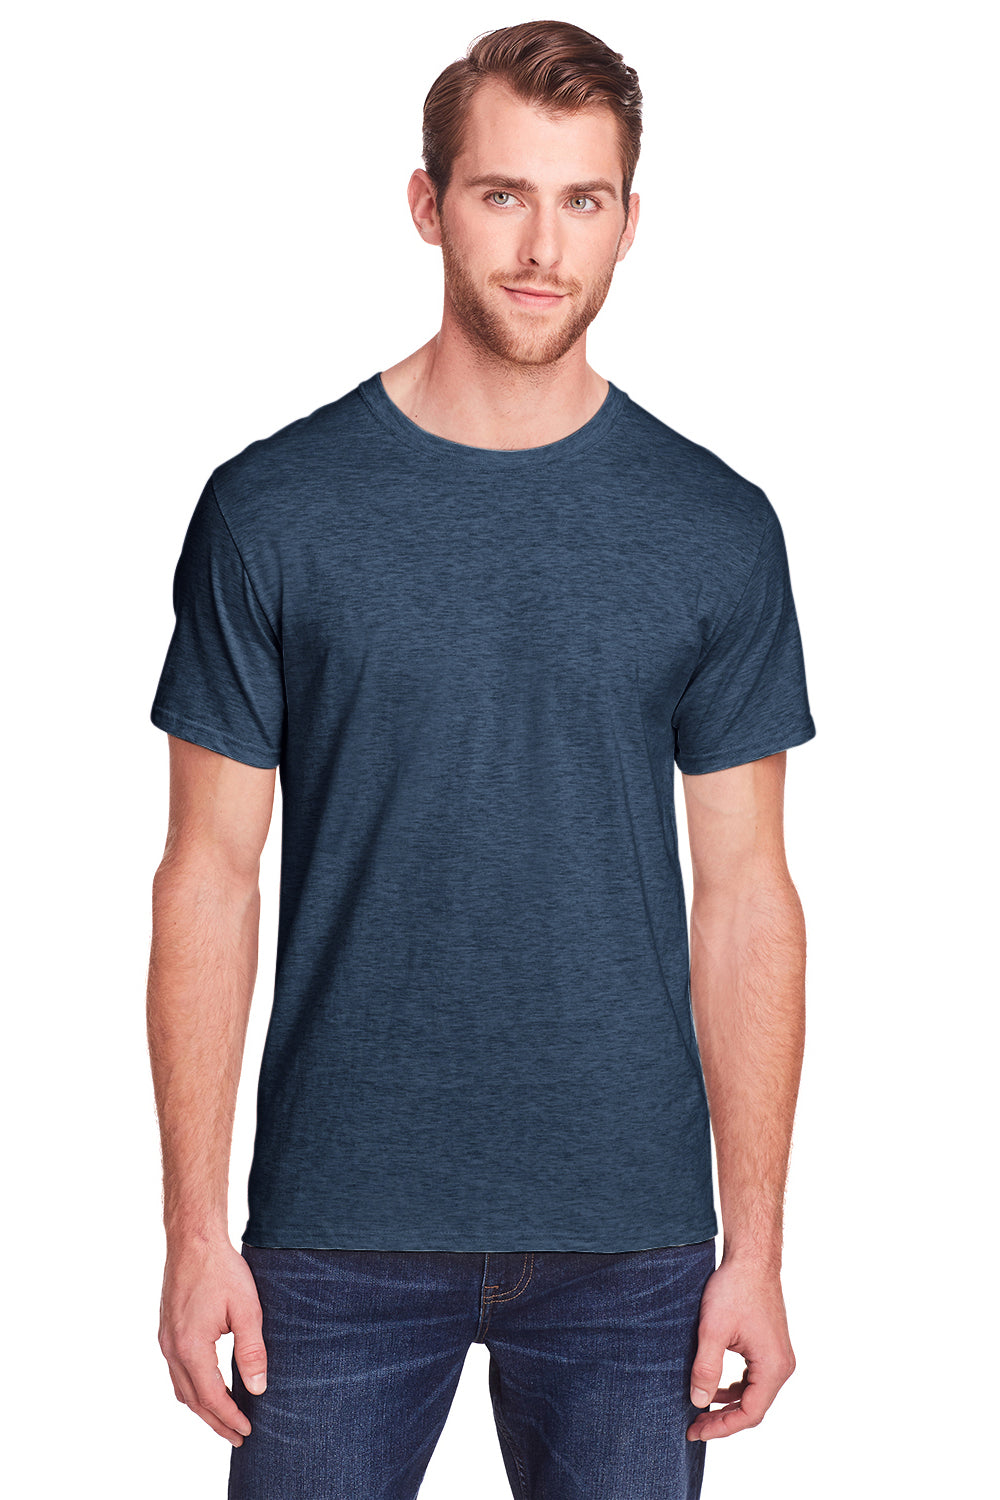 Fruit Of The Loom IC47MR Mens Heather Indigo Blue Iconic Short Sleeve  Crewneck T-Shirt —